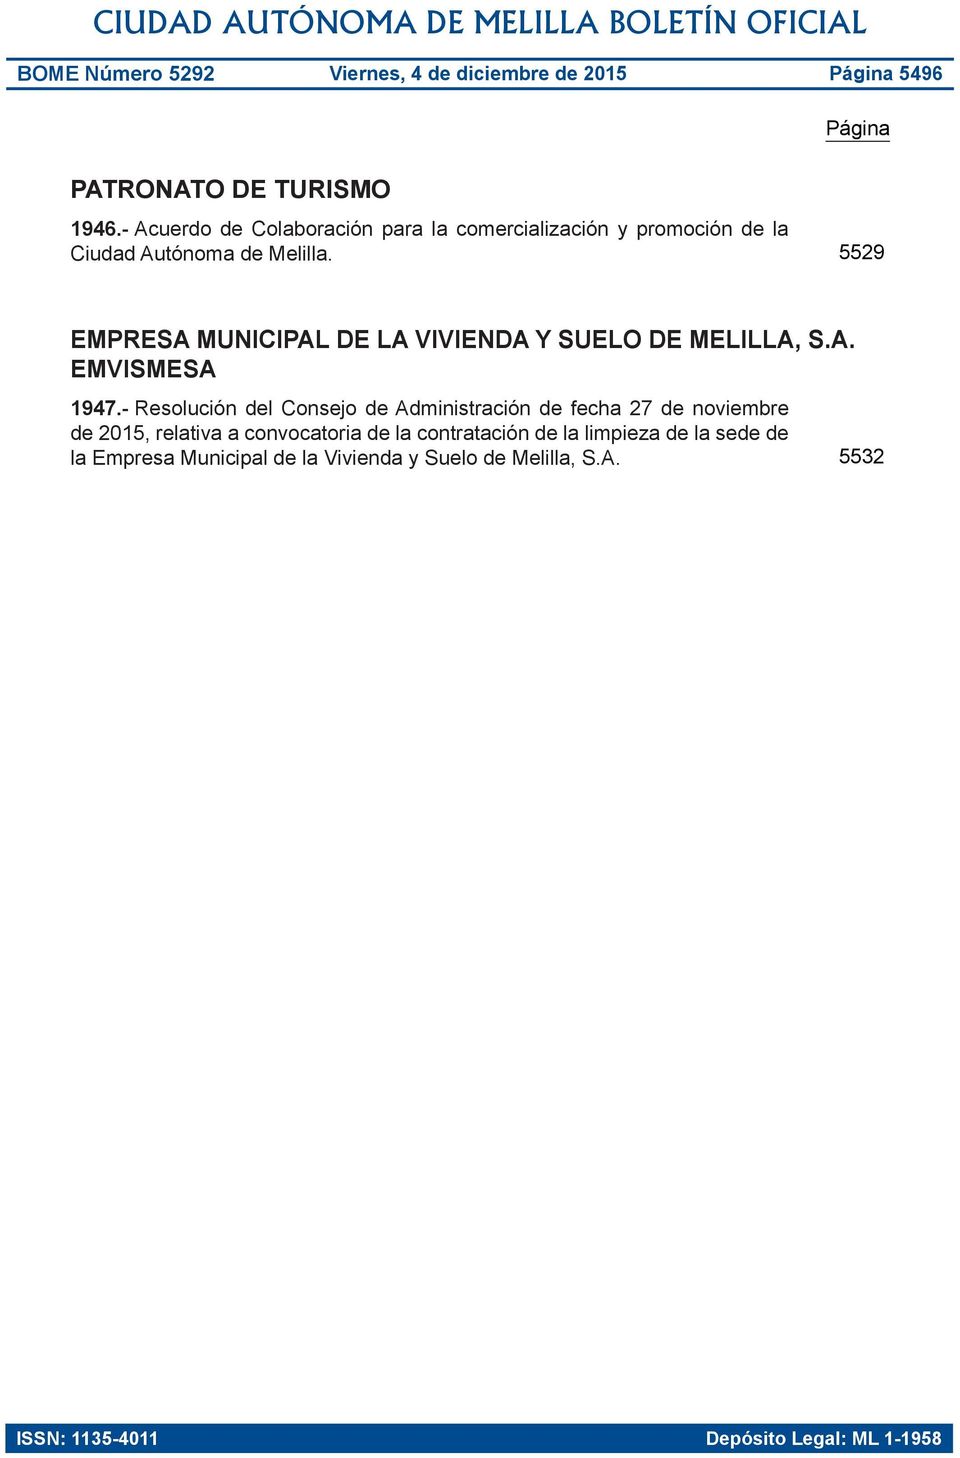 5529 empresa municipal de la vivienda y suelo de Melilla, s.a. EMVISMESA 1947.